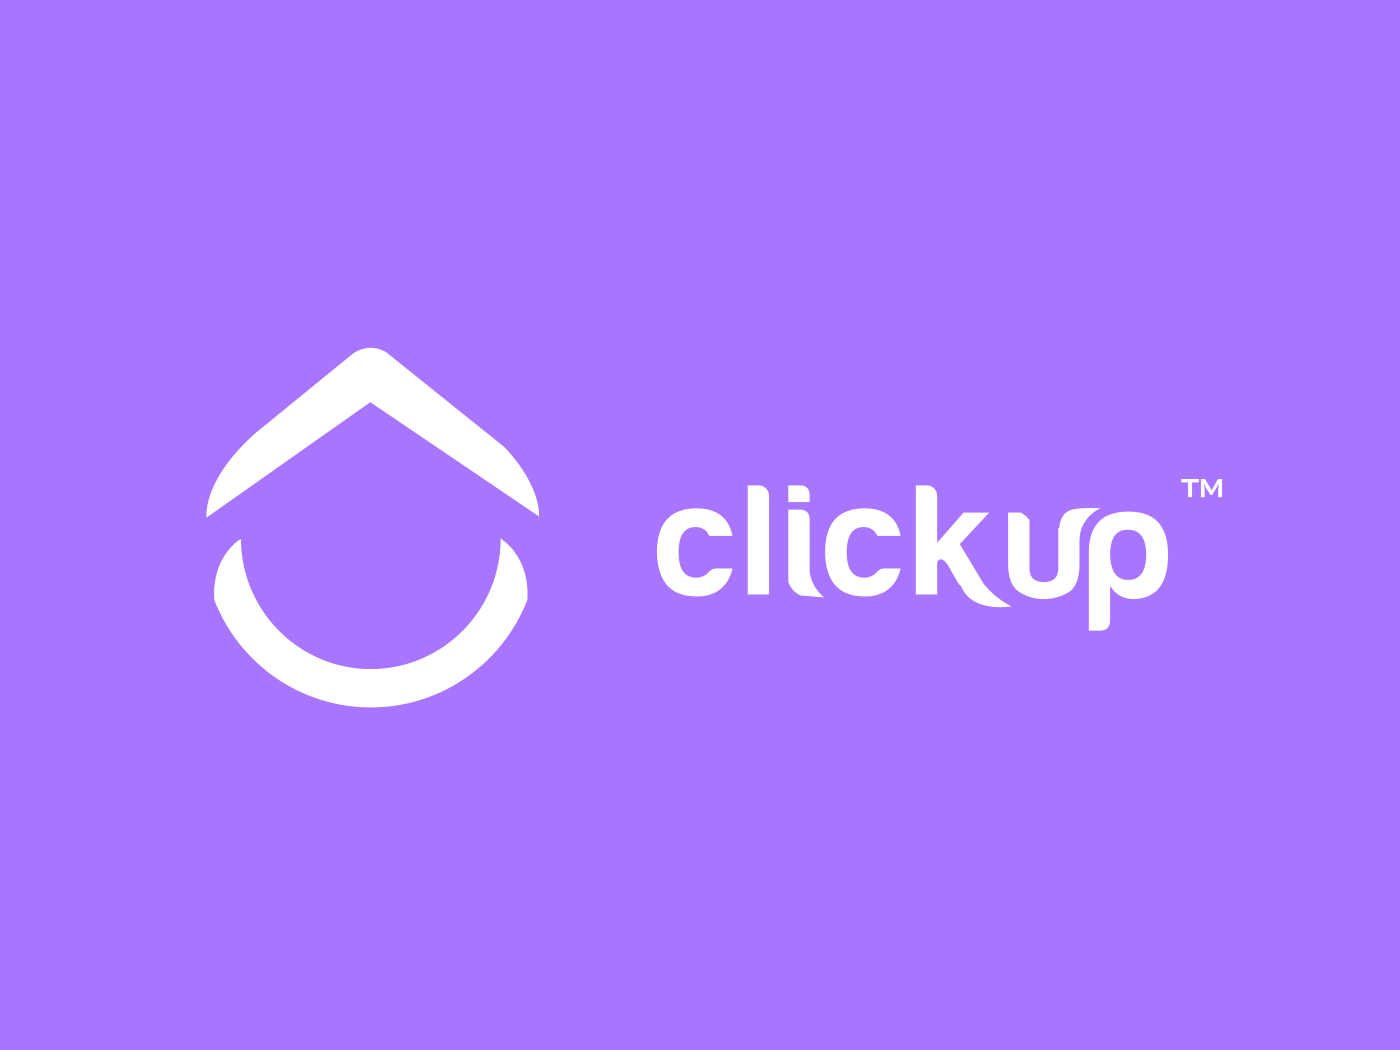 Why ClickUp? | Clickup Blog